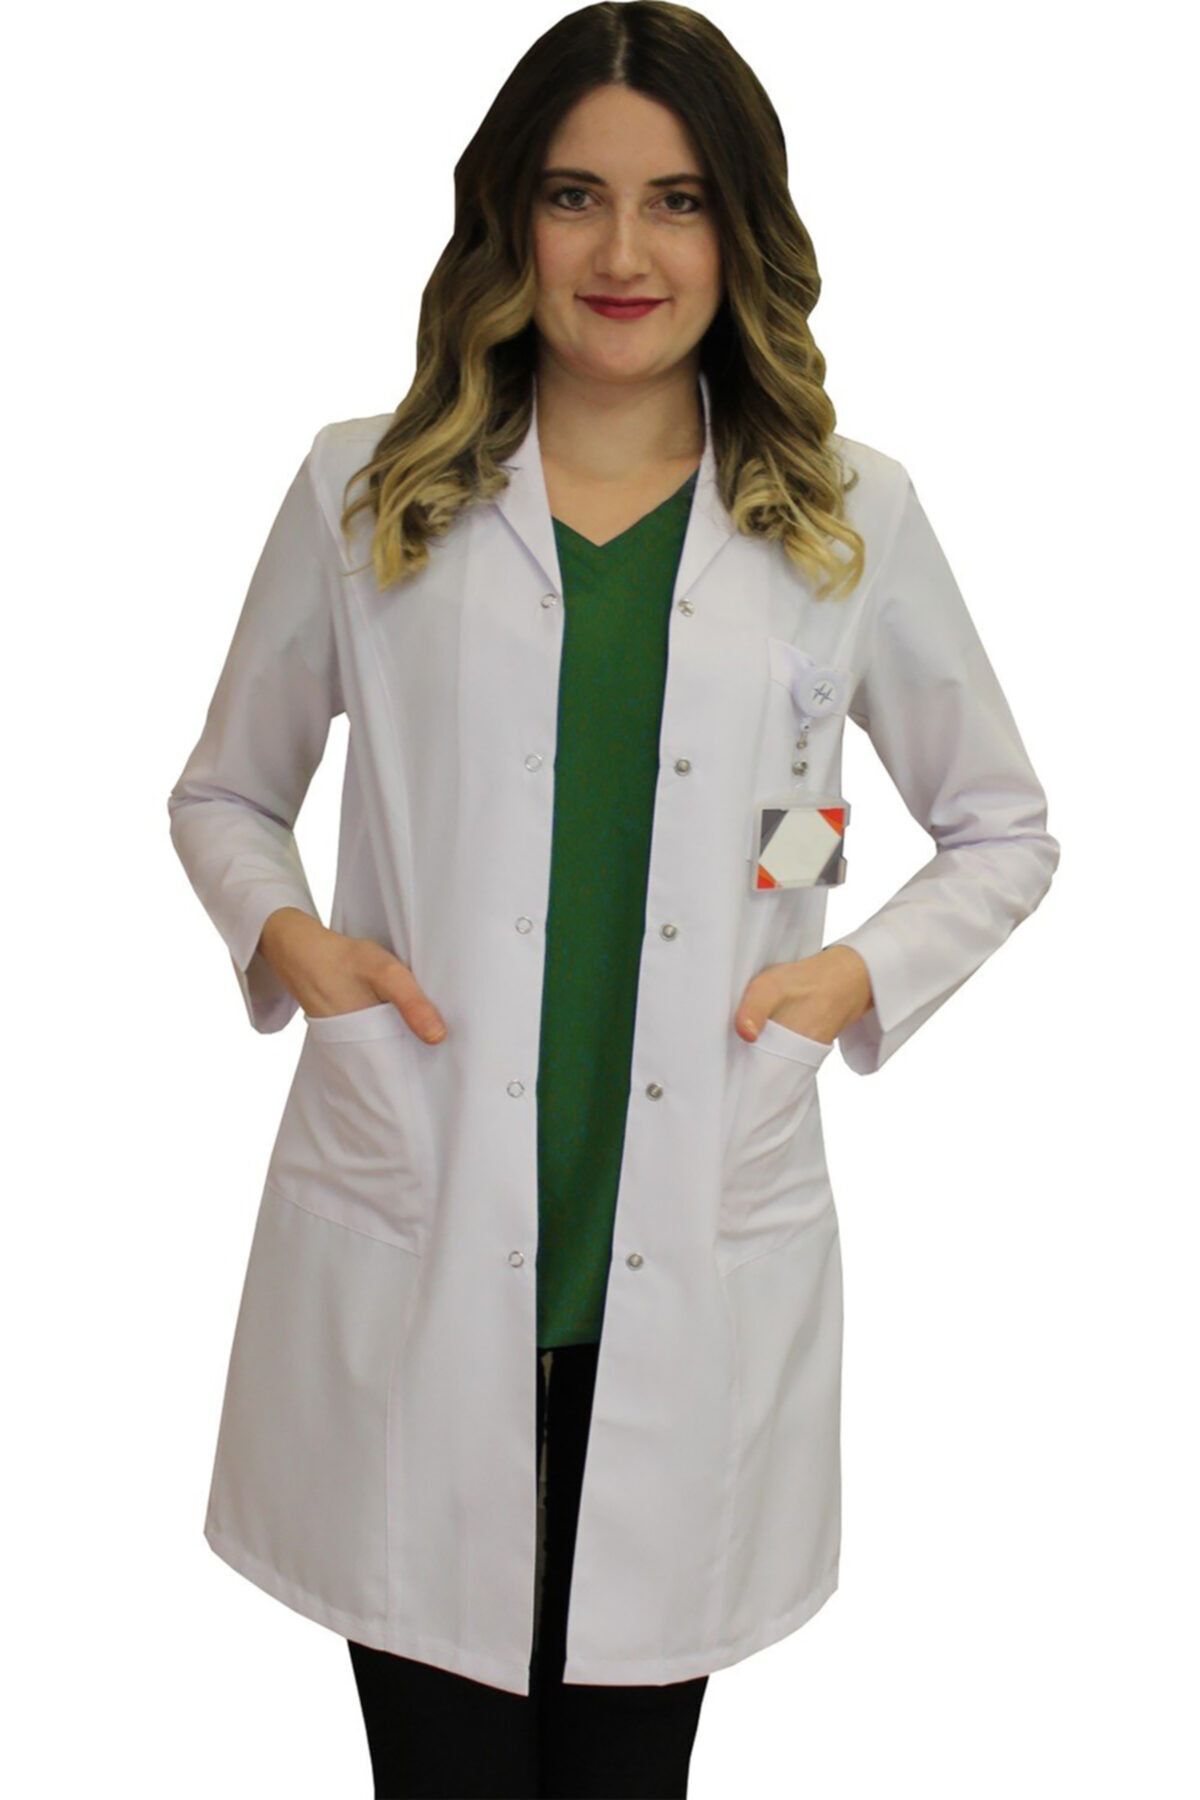 safaforma Klasik Yaka Kadın Doktor Önlüğü Hemşire Öğretmen Lab Eczacı Laboratuvar Önlüğü Beyaz Önlük